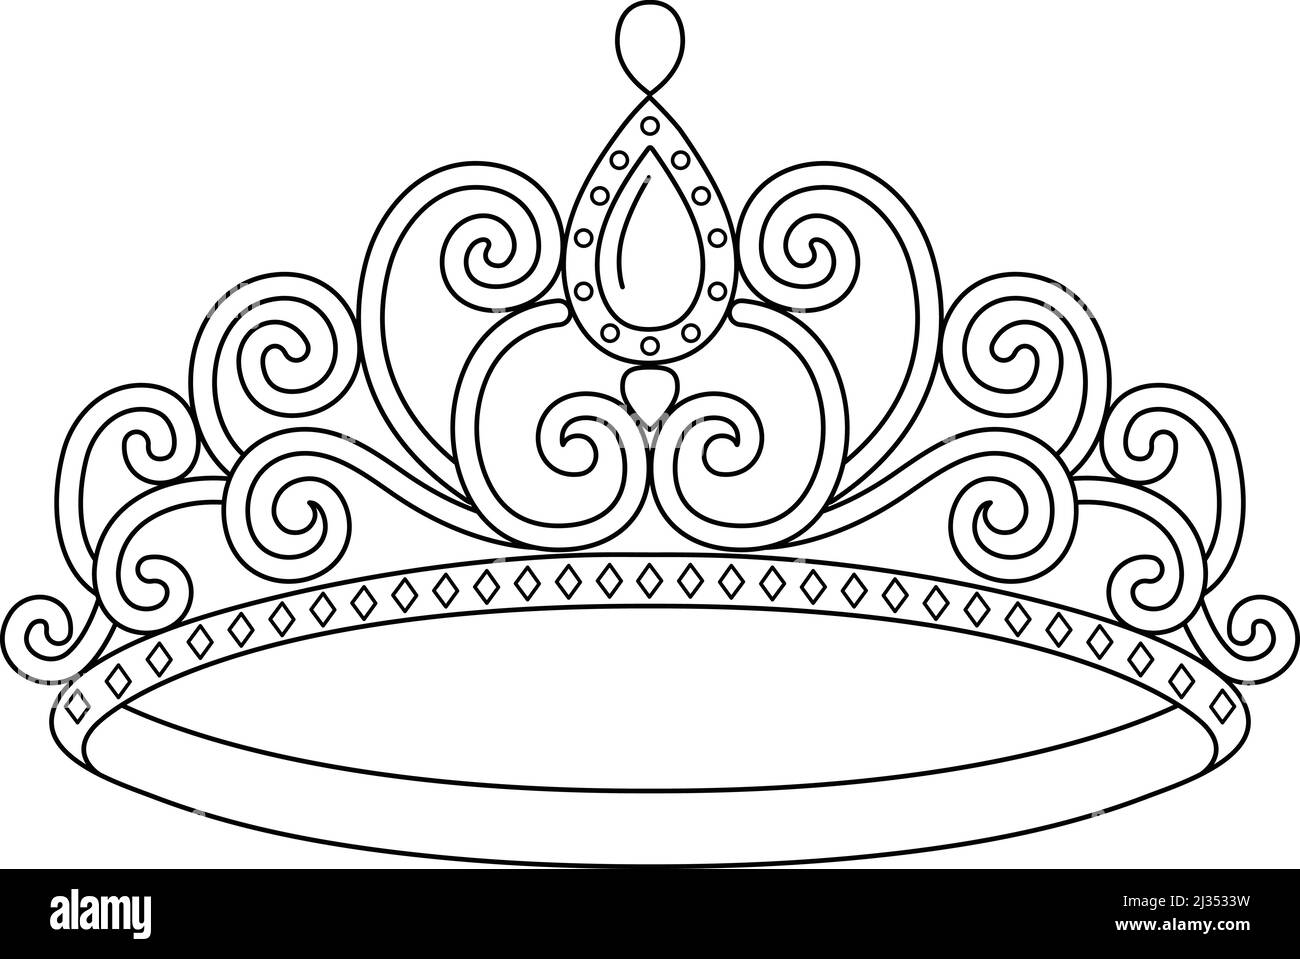 Princesse Crown coloriage page isolé Illustration de Vecteur